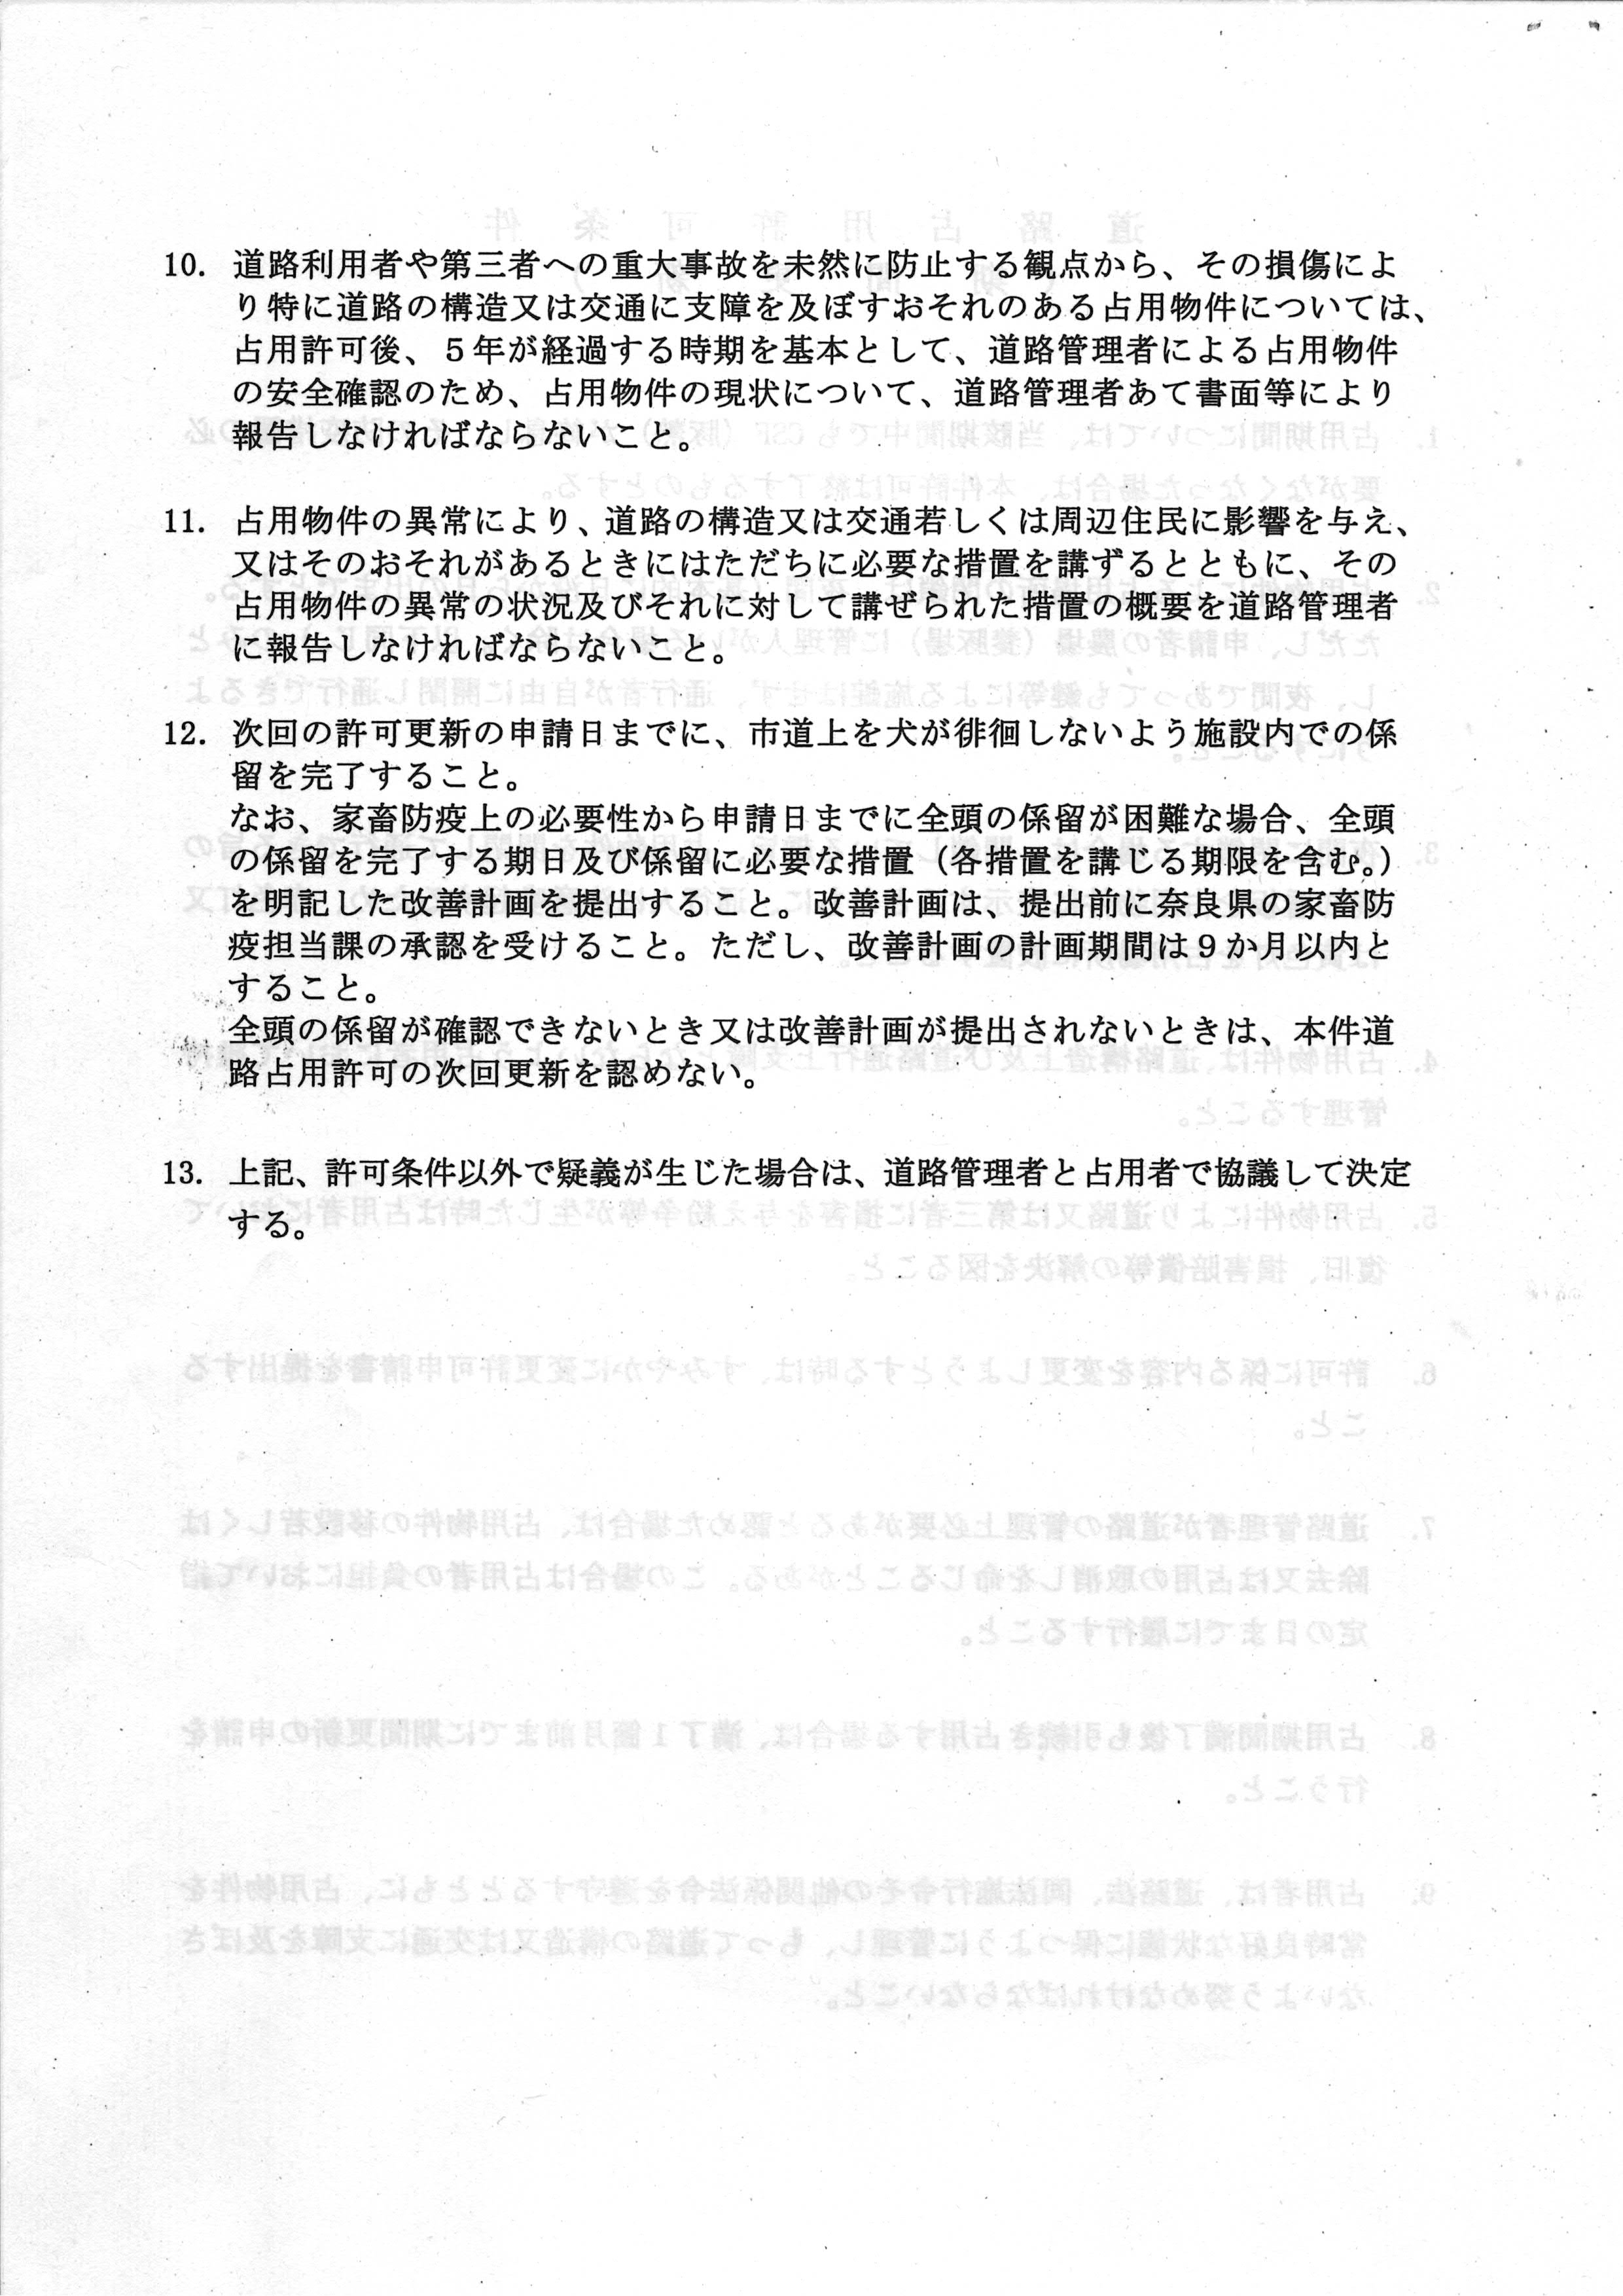 令和5(2023)年9月25日-(株)村田商店に対する市道占用の許可更新に係る協議-06